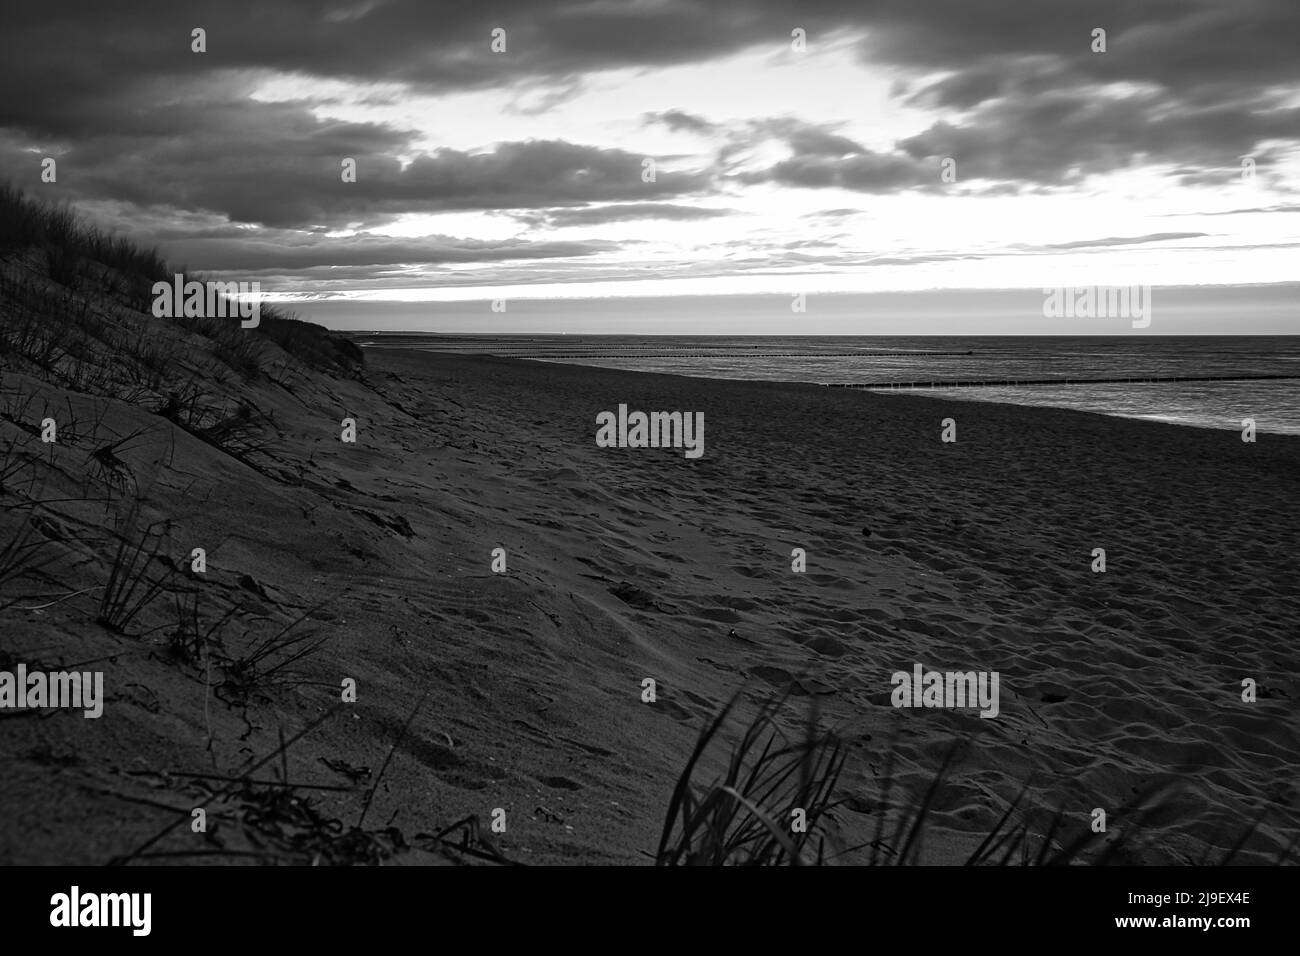 sur la plage de la mer baltique, en noir et blanc, avec nuages, dunes et plage. randonnée en automne. grand paysage pour des vacances Banque D'Images